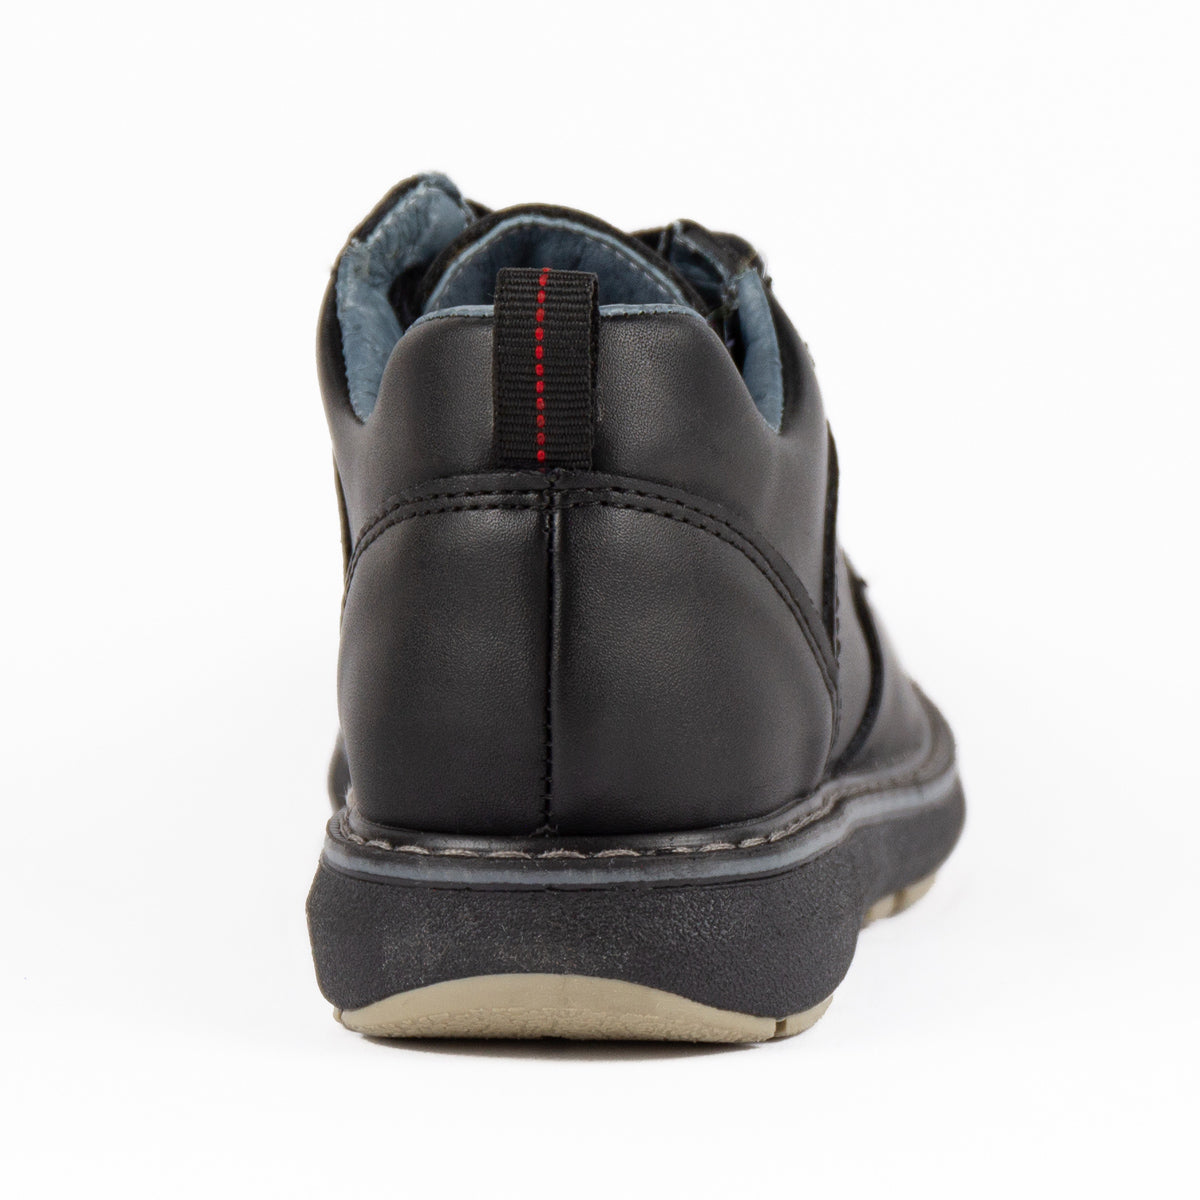 Zapato Calzado Niño Rokino 3286-D